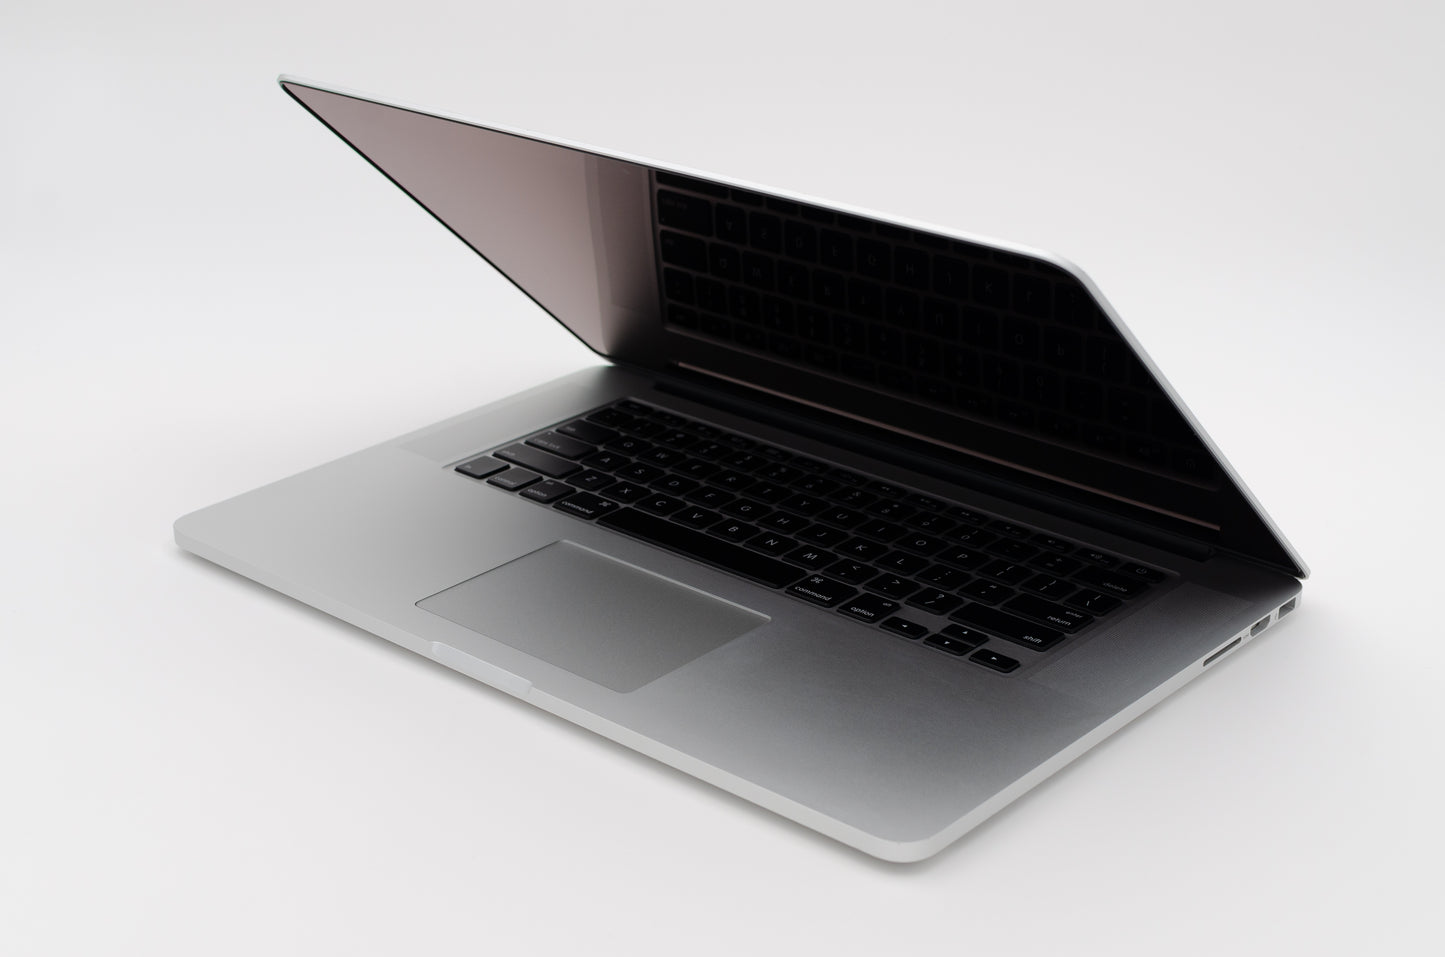 apple-mid-2012-15.4-inch-macbook-pro-a1286-aluminum-qci7 - 2.3ghz processor, 4gb ram, gt 650m - 1gb gpu-md103ll/a-5